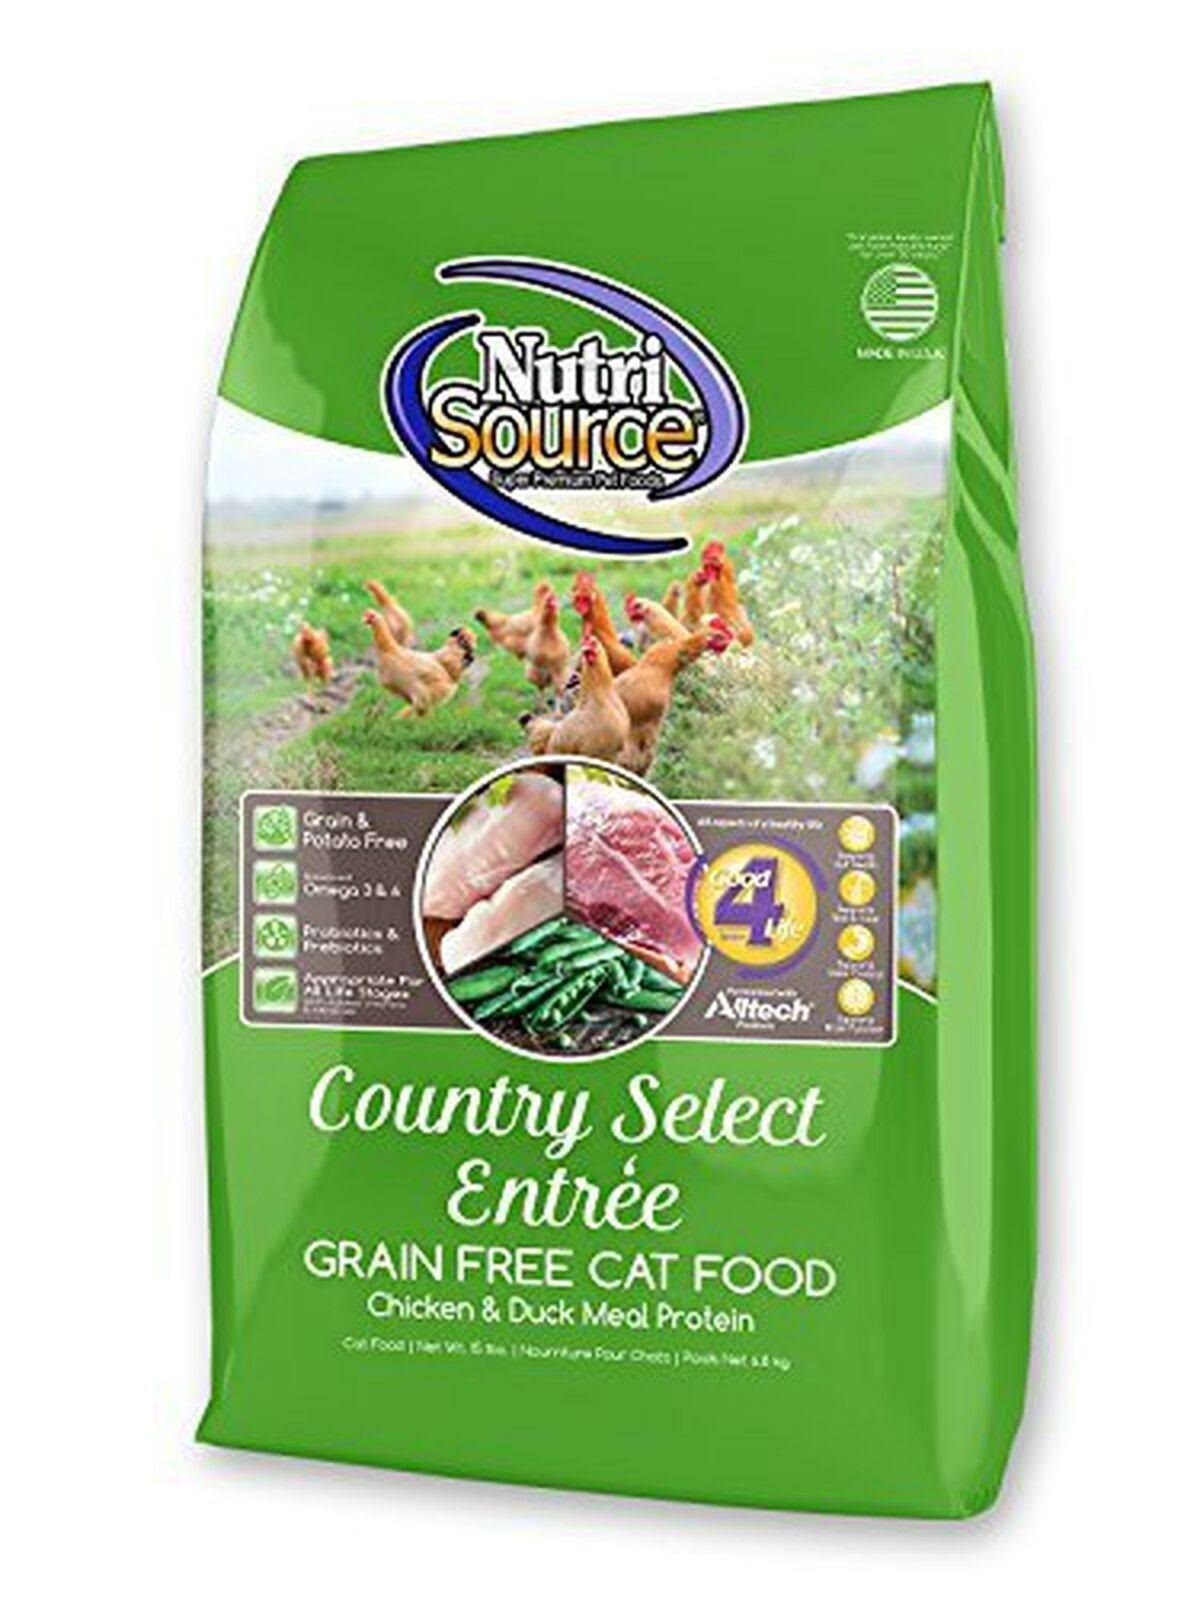 Nutrisource Country Select Entrée Grain Free Cat Food